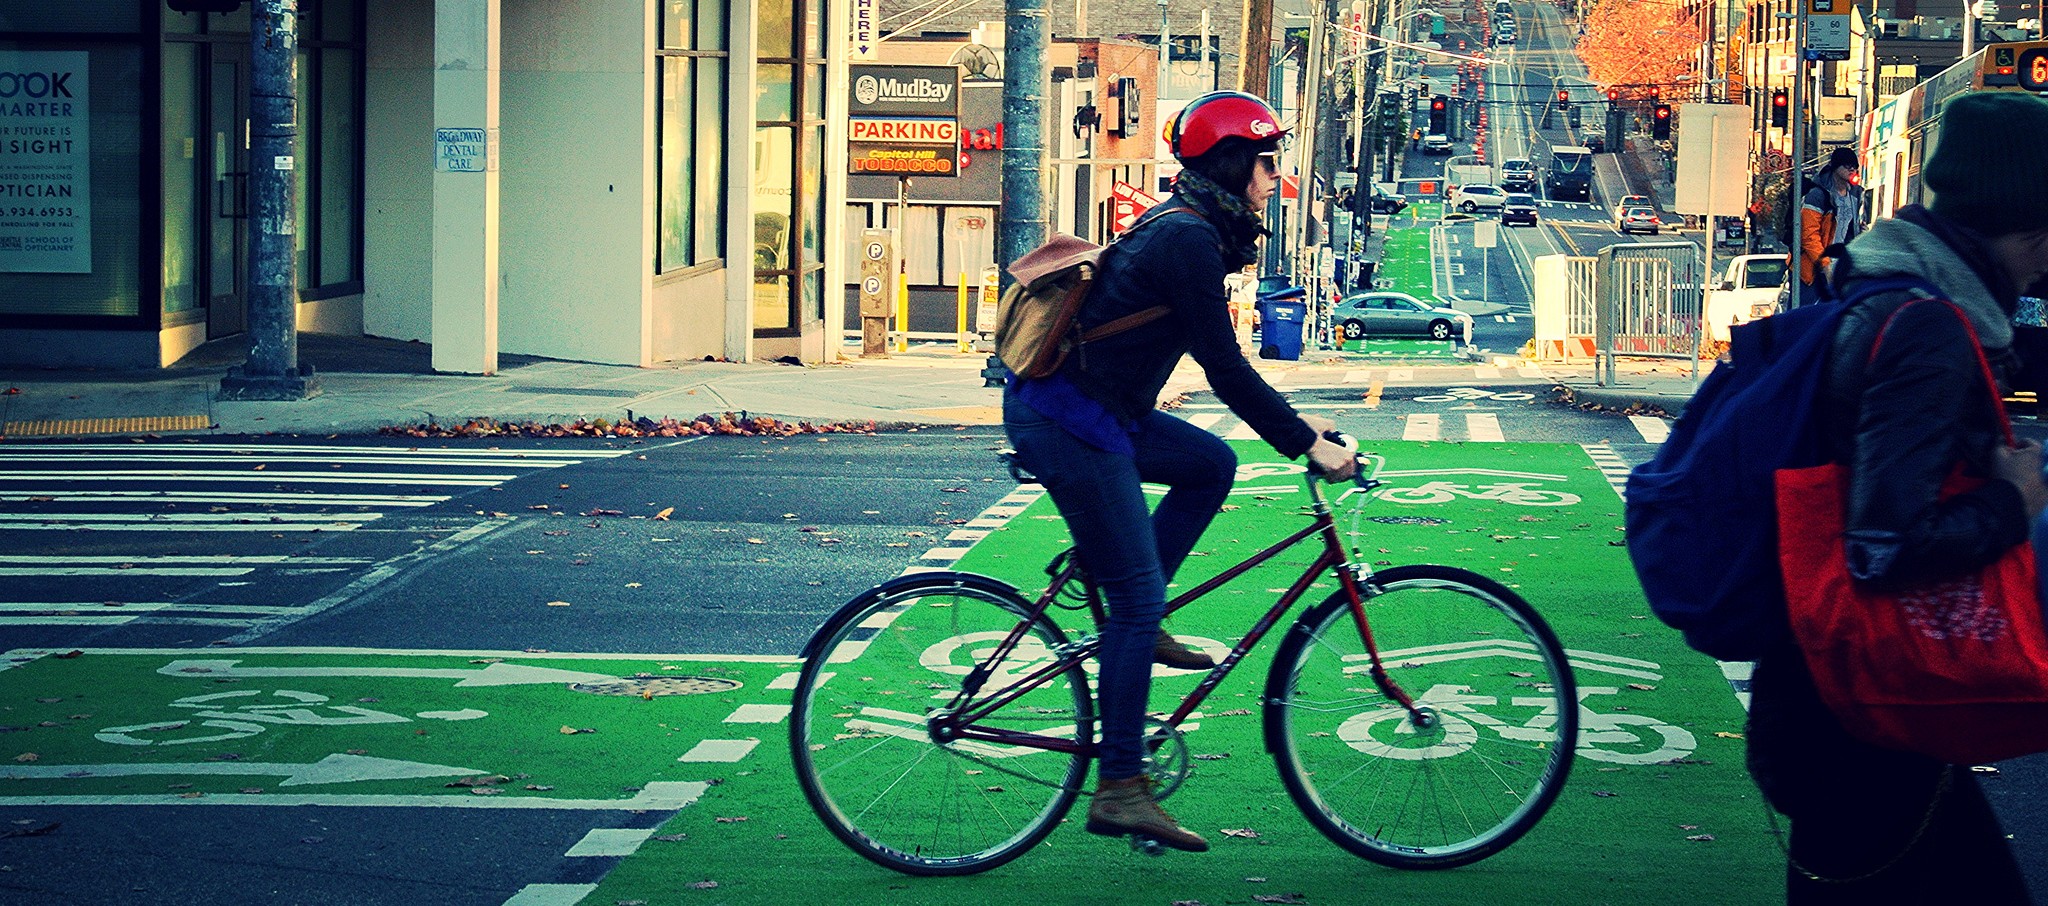 7 Ciclovias que poderão melhorar a vida dos ciclistas